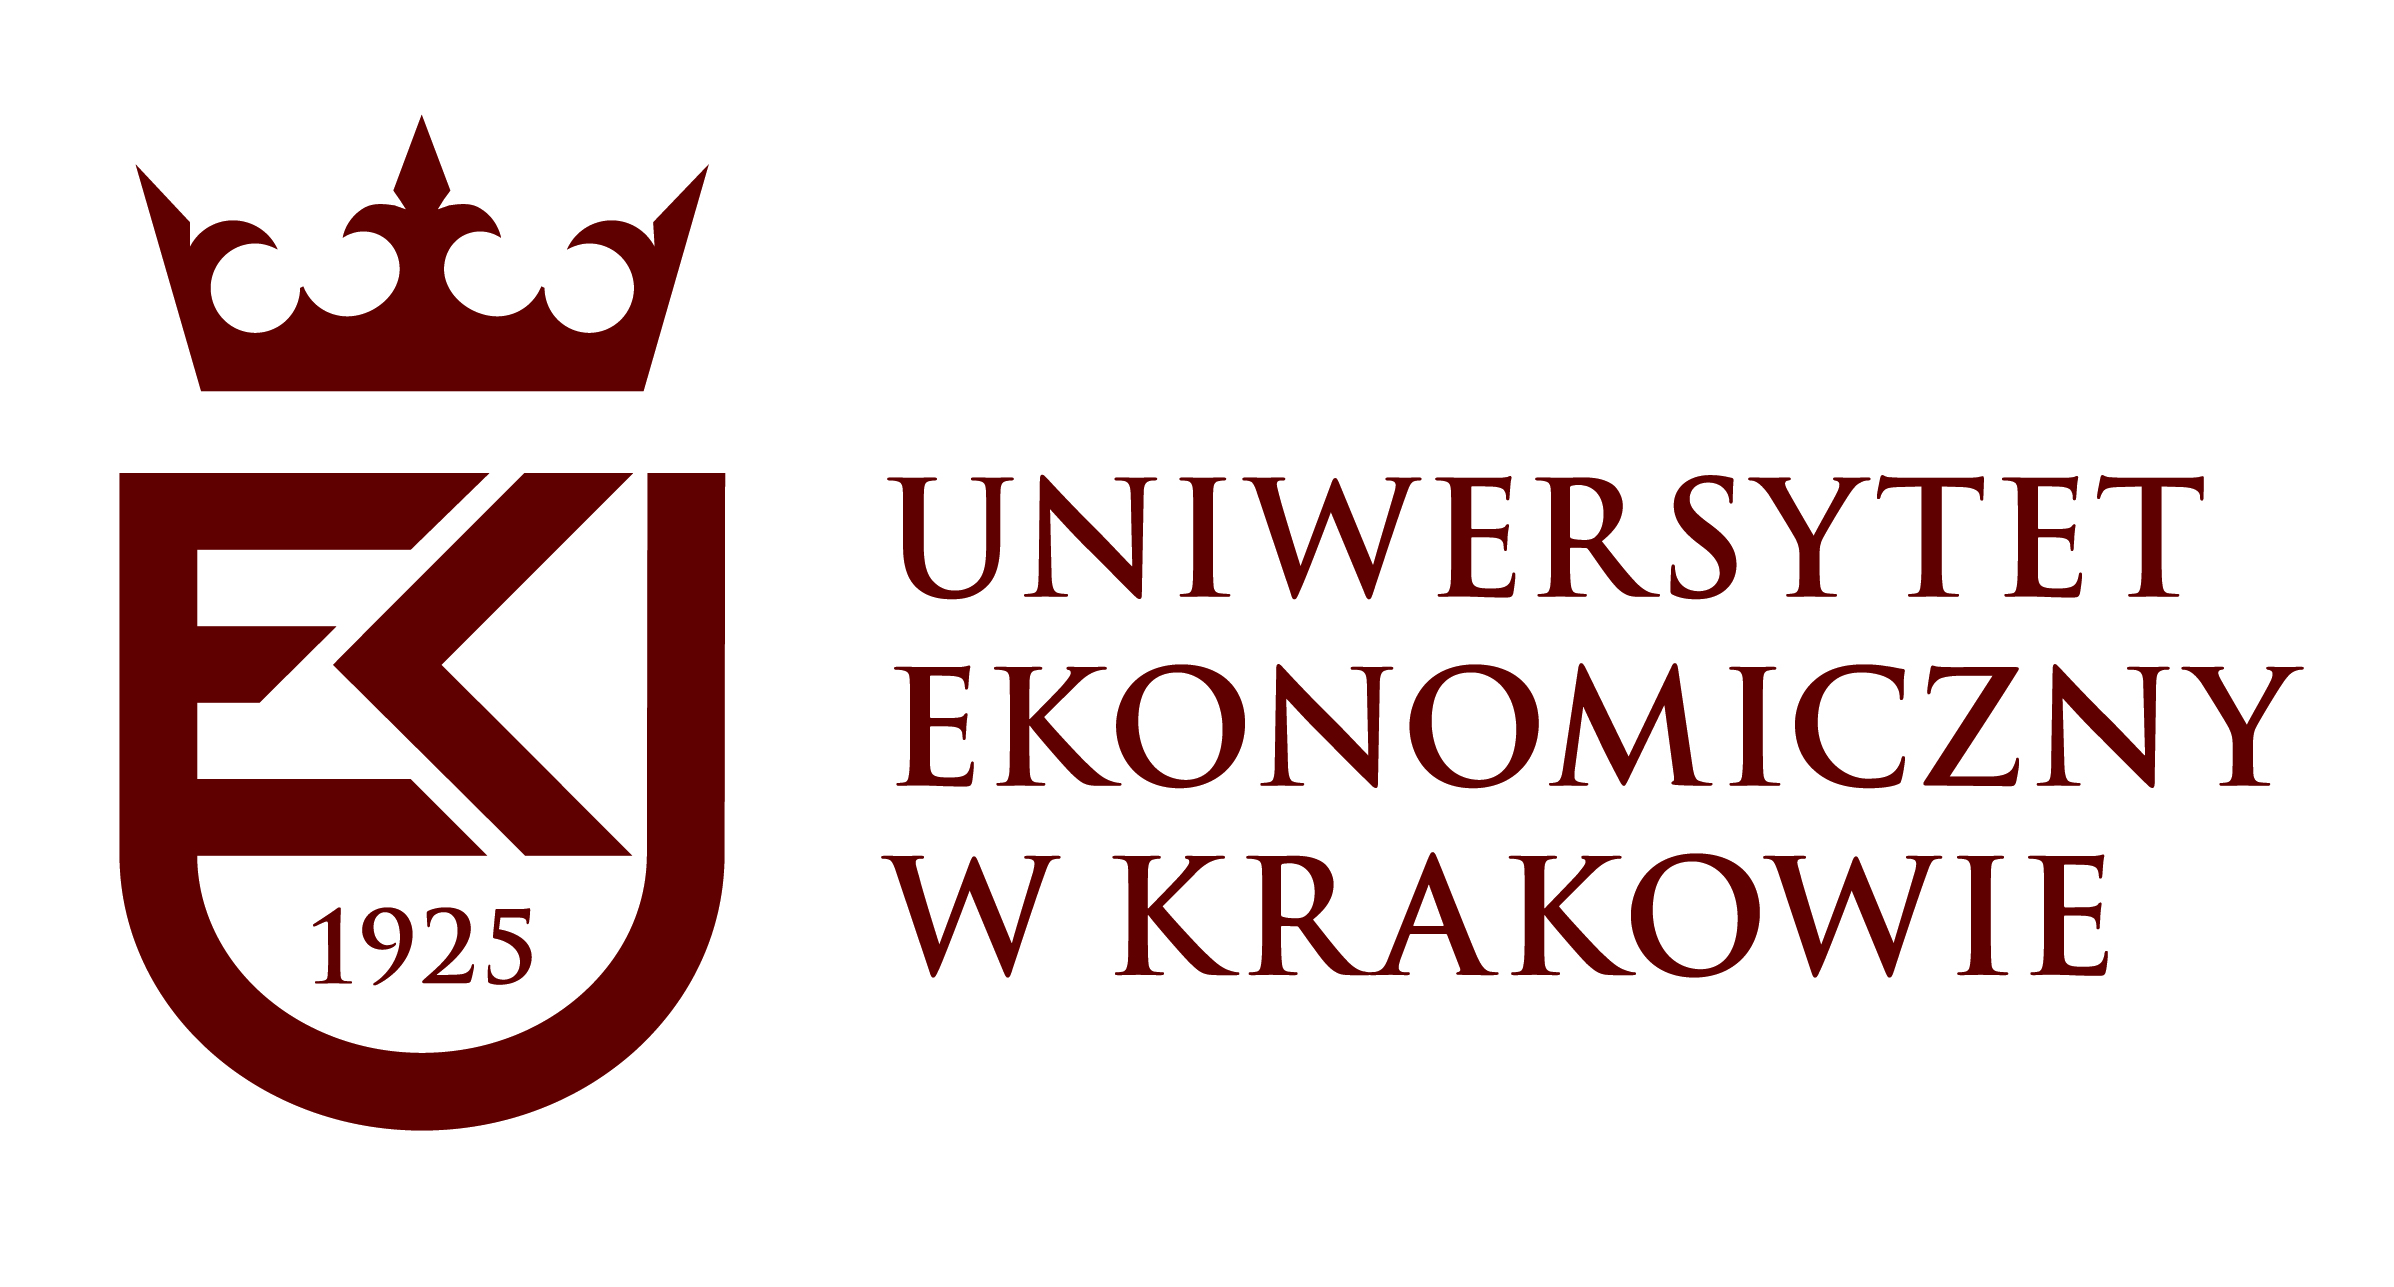 Cracow University of Economics 